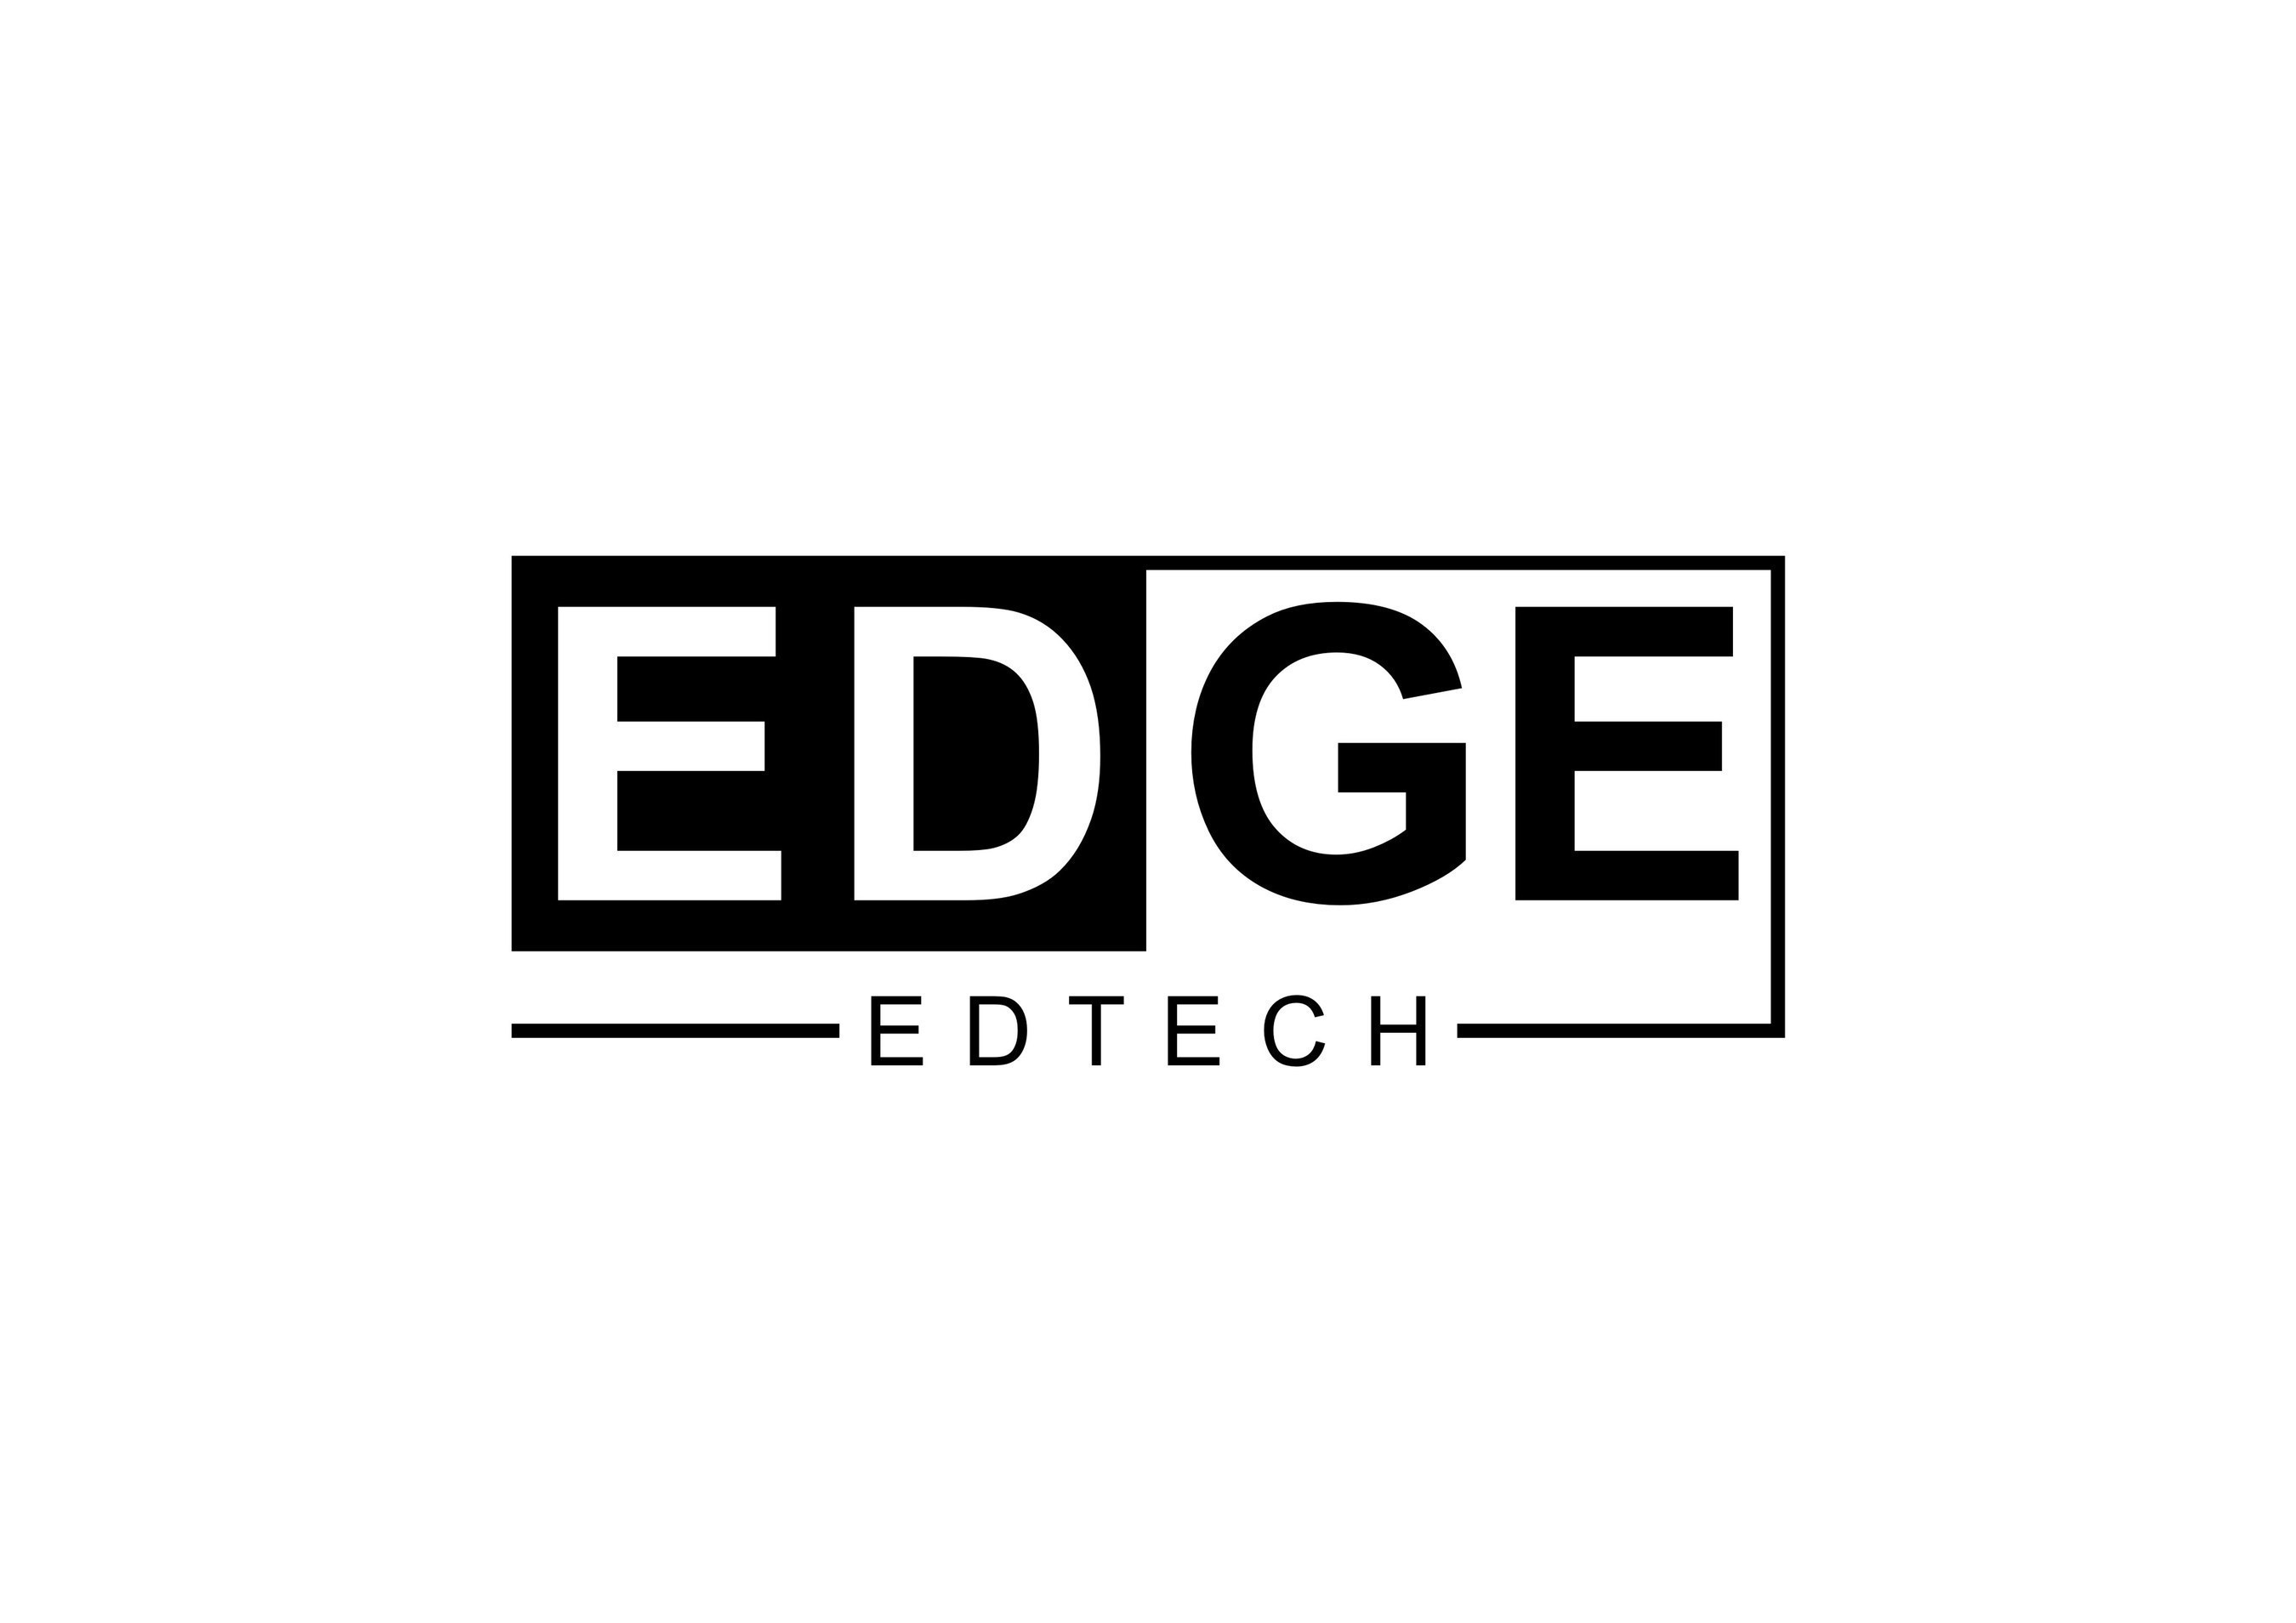 EDGE Edtech